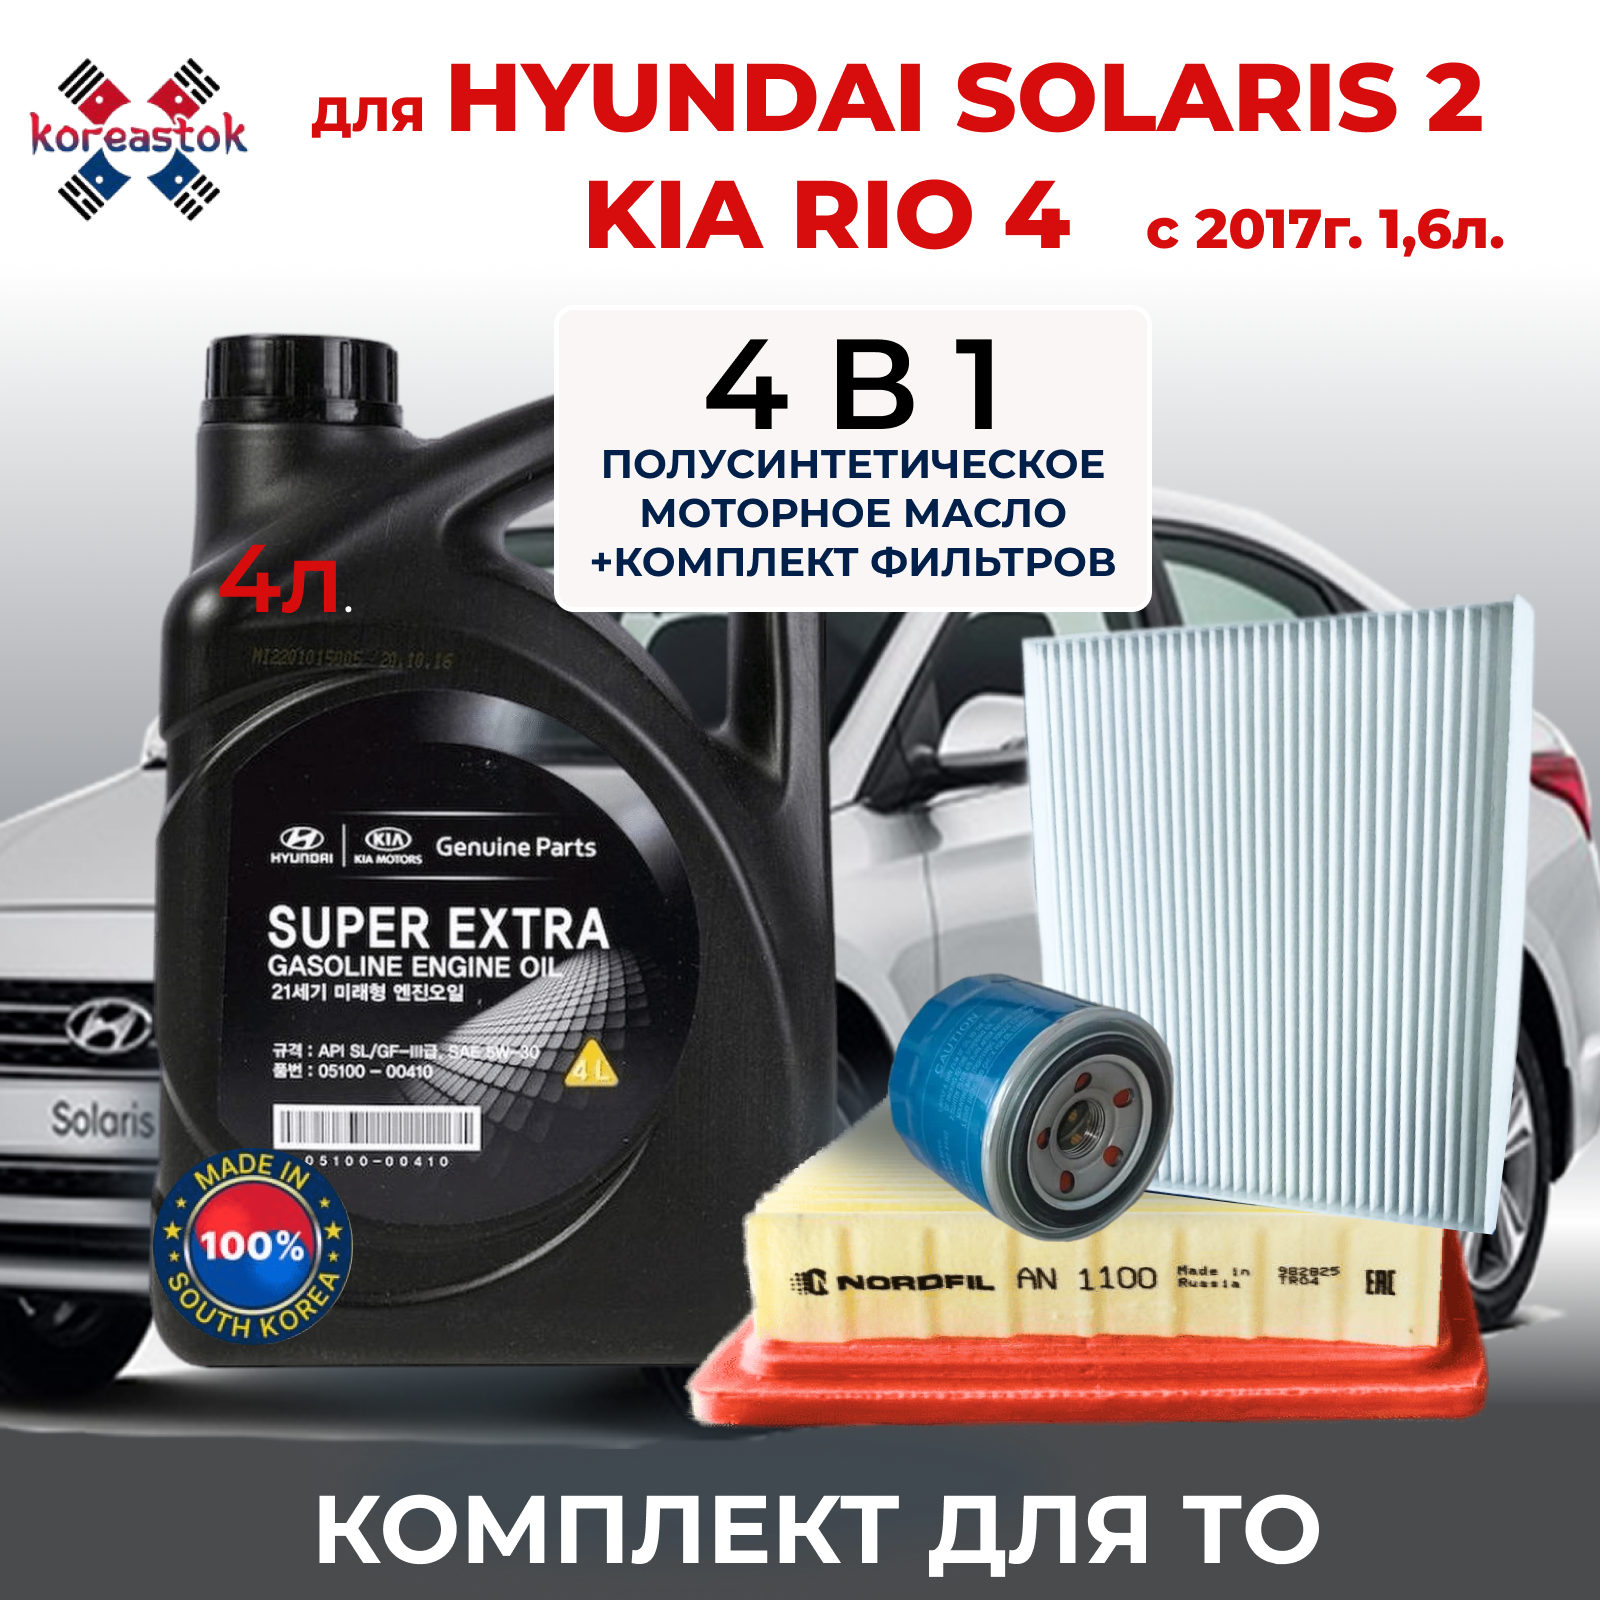 Набор фильтров для KIA Rio и Hyundai Solaris 16 с 2017 года - 4 в 1